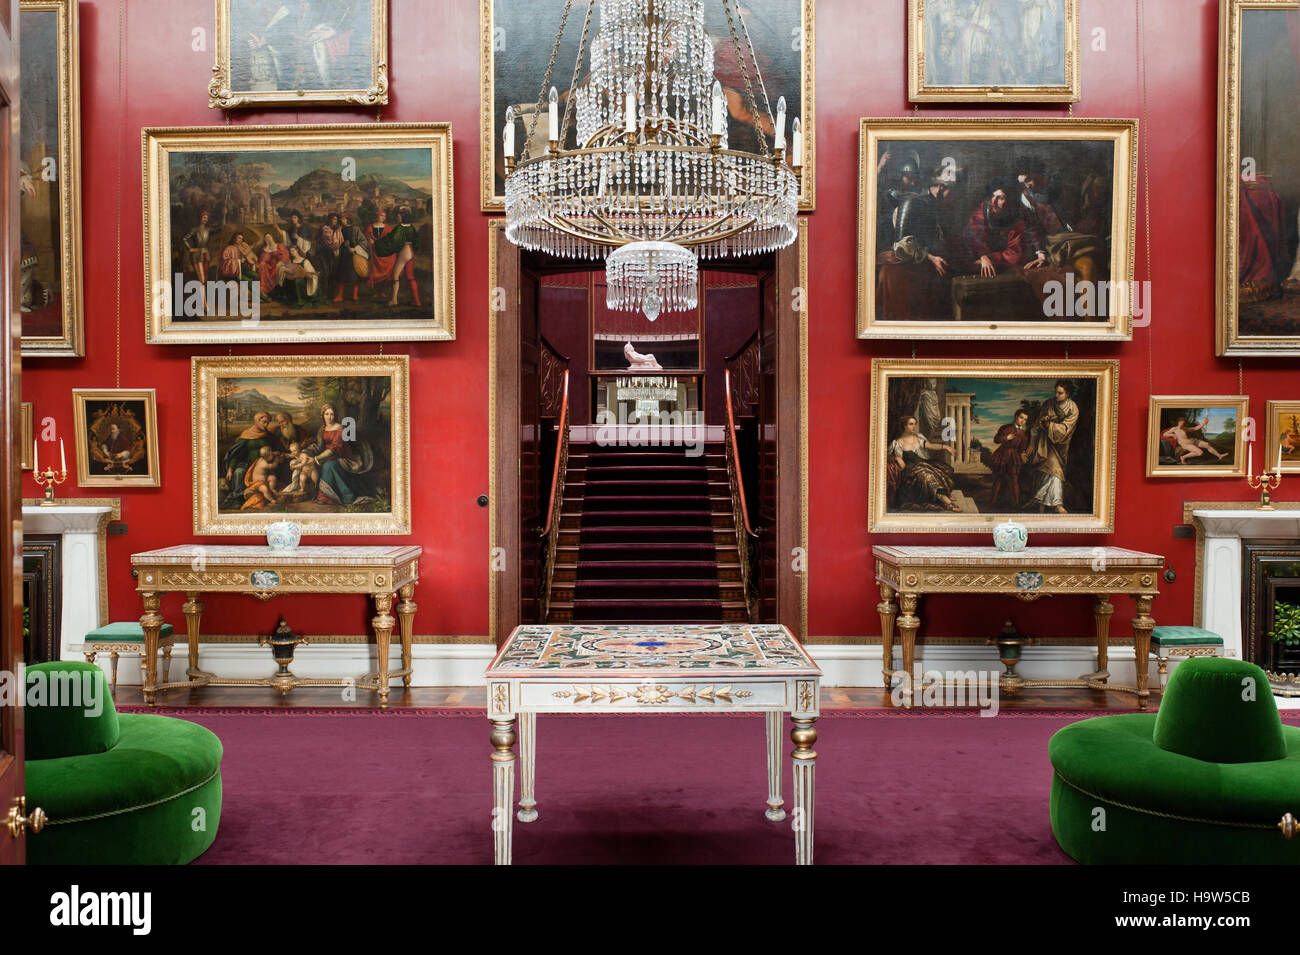 Die Bildergalerie im Attingham Park, Shropshire, mit einem Blick durch die Türen zum Treppenhaus. Die Bildergalerie wurde von John Nash in 18 entworfen. Stockfoto